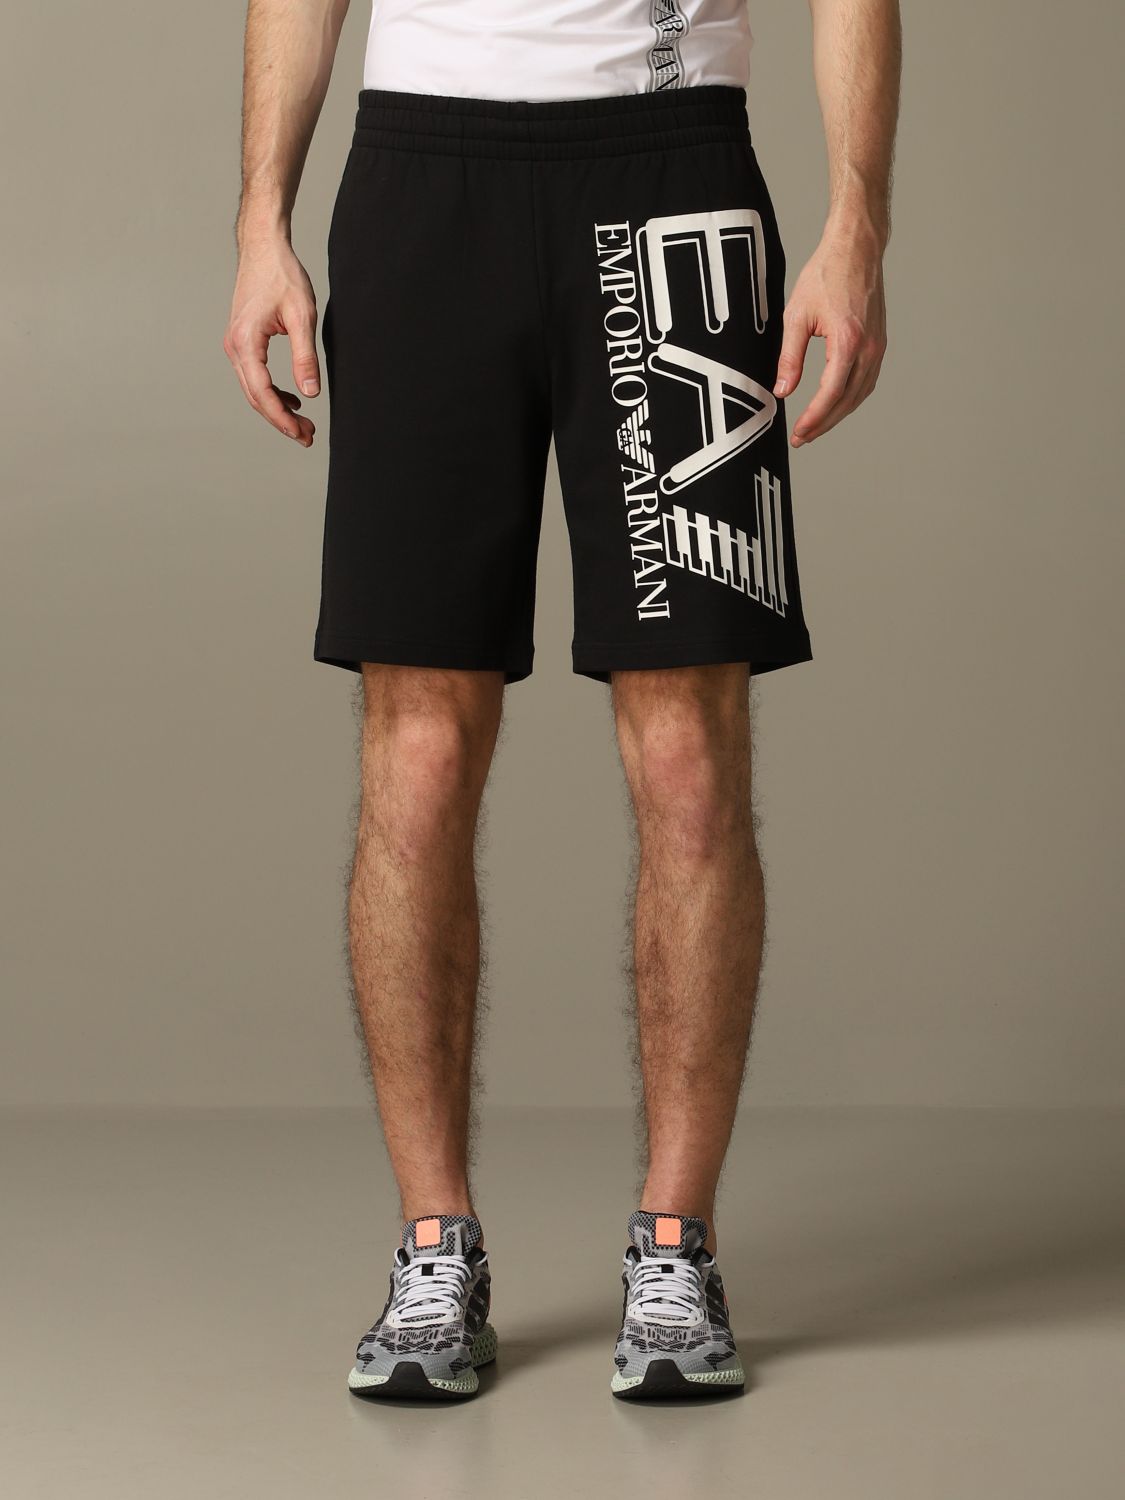 ea7 black shorts